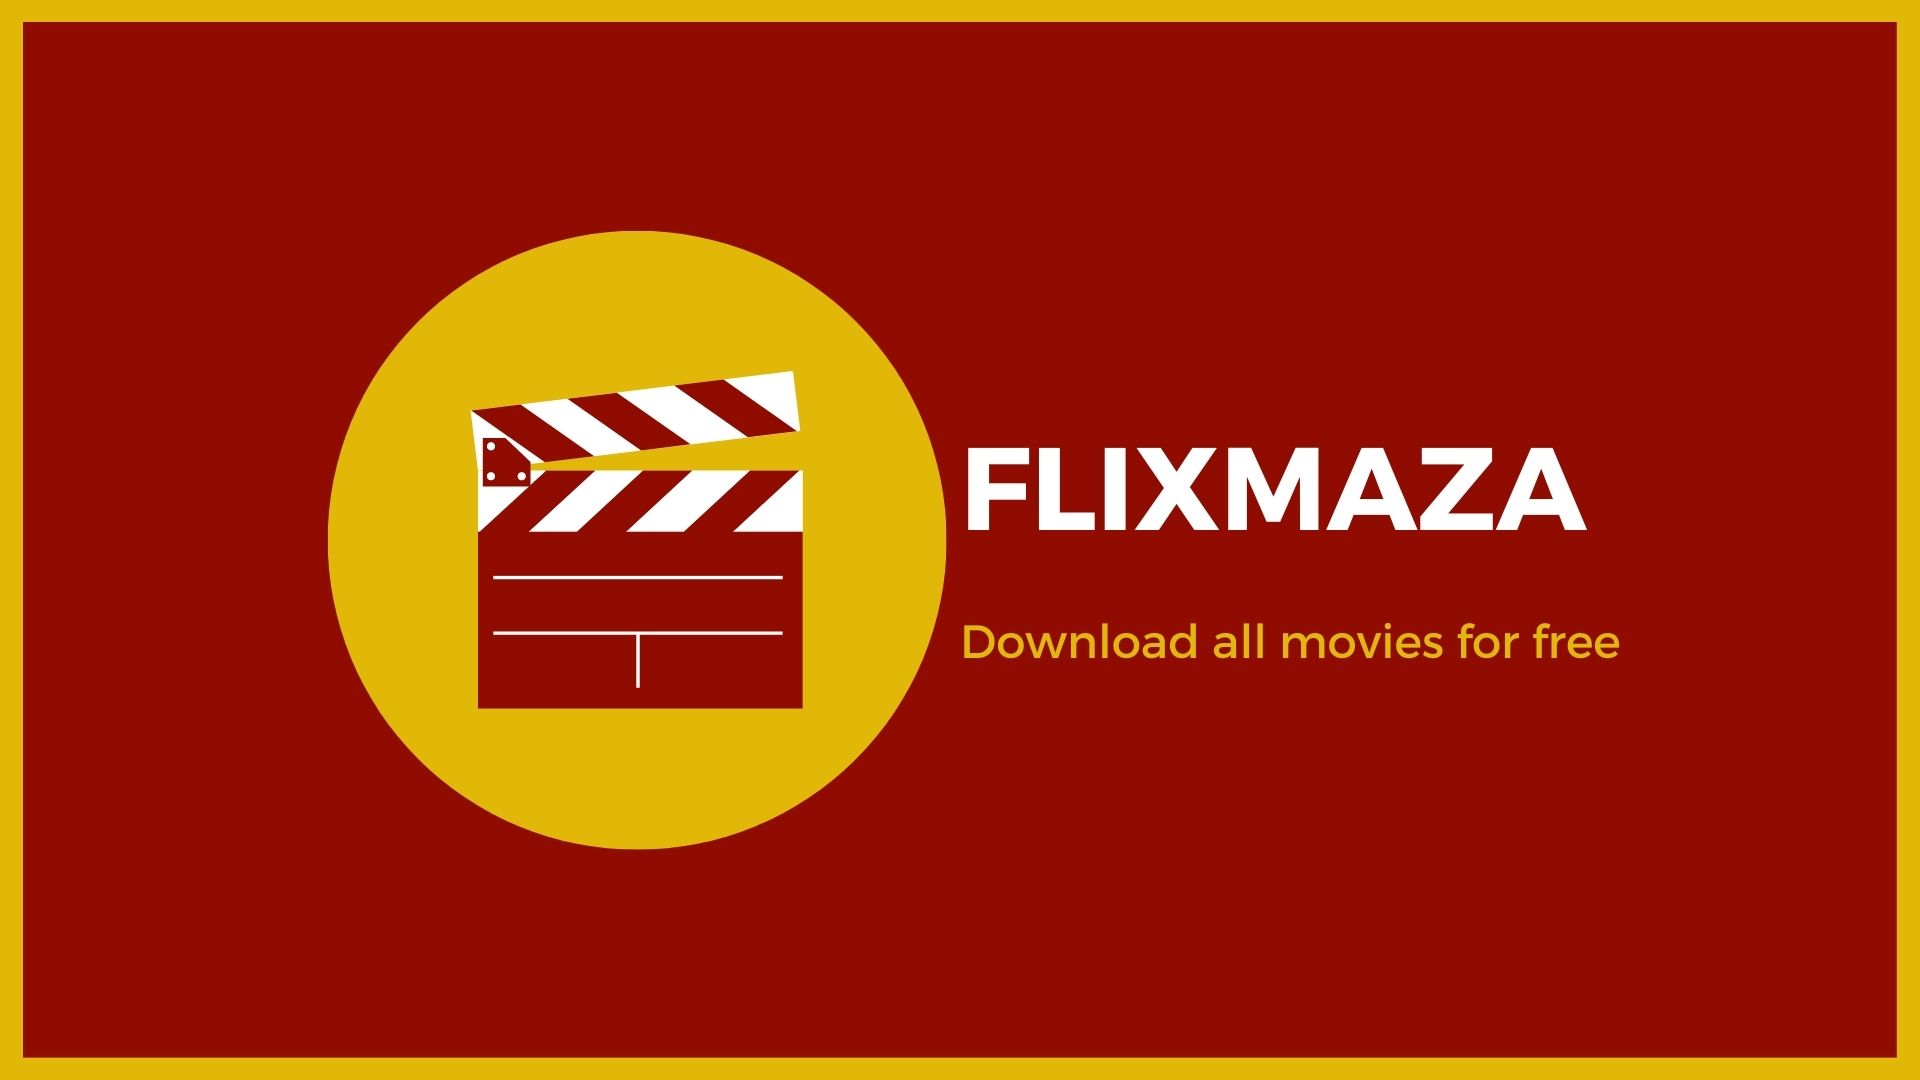 Filxmaza – Download all Filxmaza movies for free